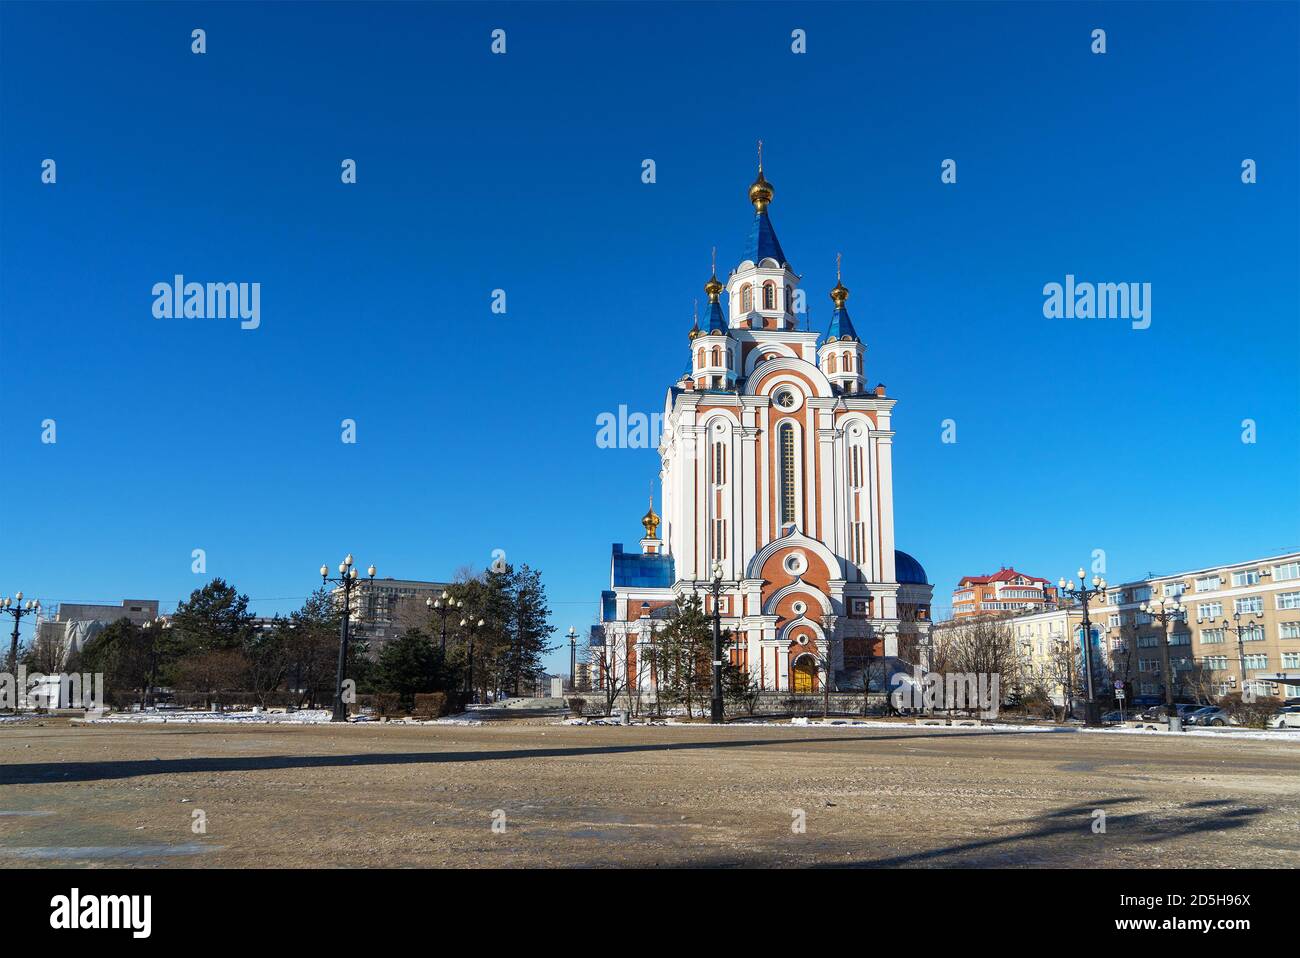 Dormition Kathedrale von Chabarowsk, eine der größten Kirchen im russischen Fernen Osten. Russische orthodoxe Kathedrale, Ferner Osten. Stockfoto